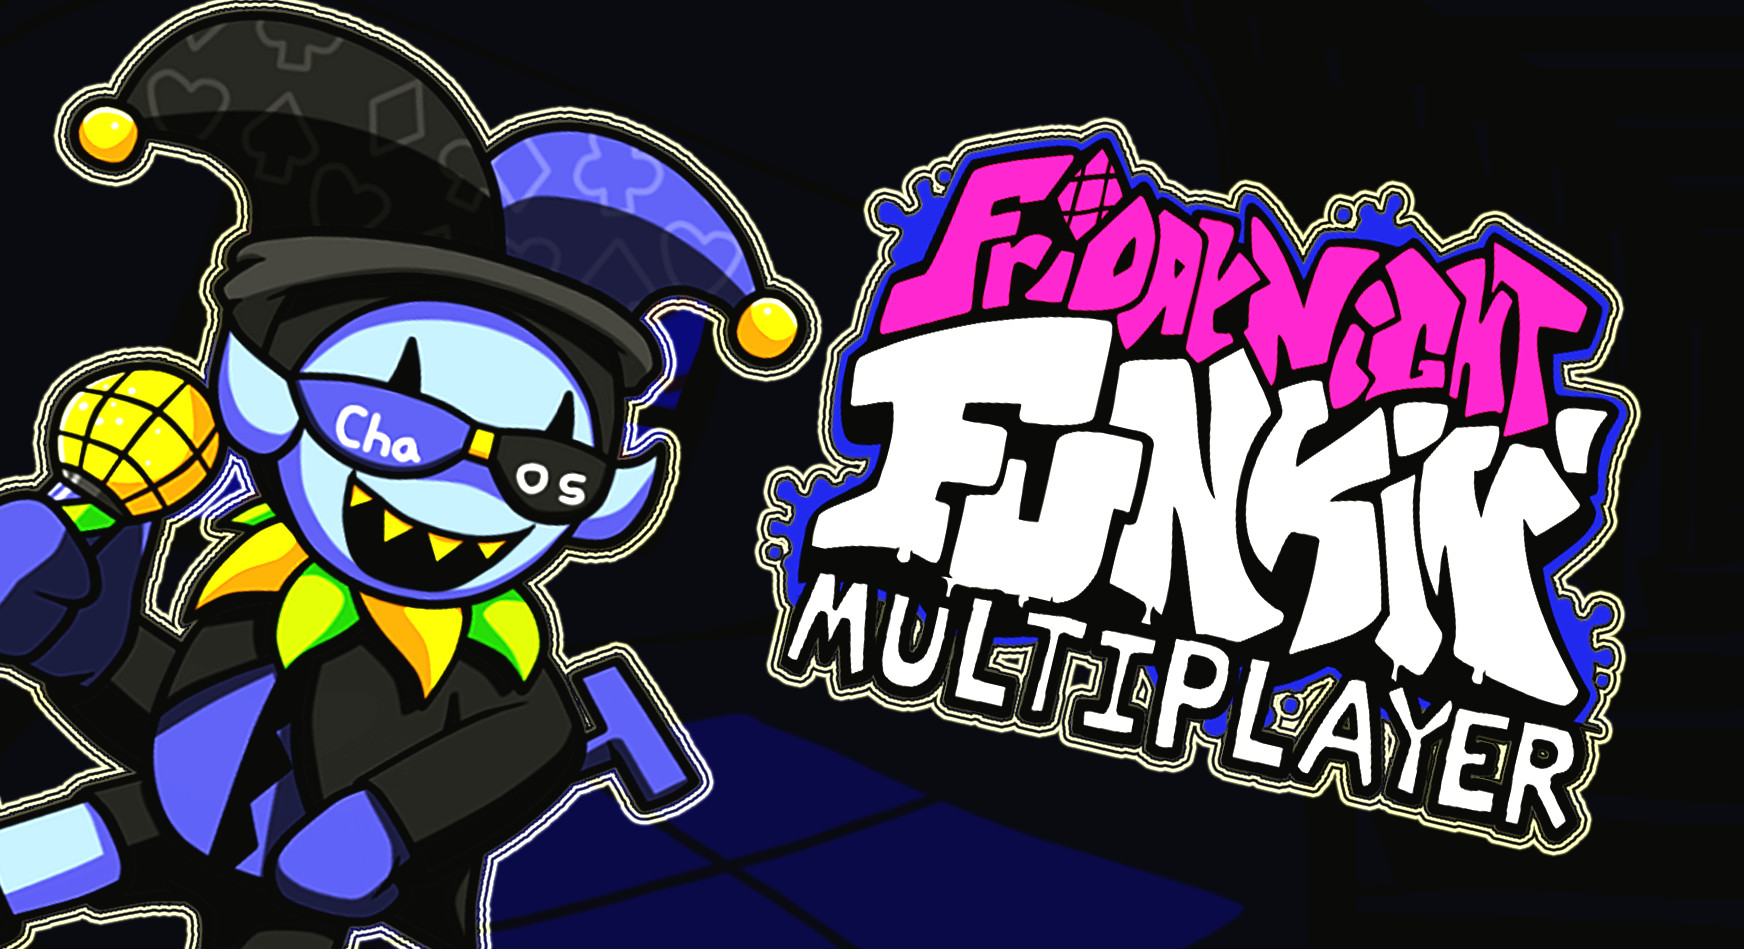 Fnf update. FNF Jevil. Friday Night Funkin Multiplayer. Friday Night Funkin Multiplayer Mod. FNF Mod.